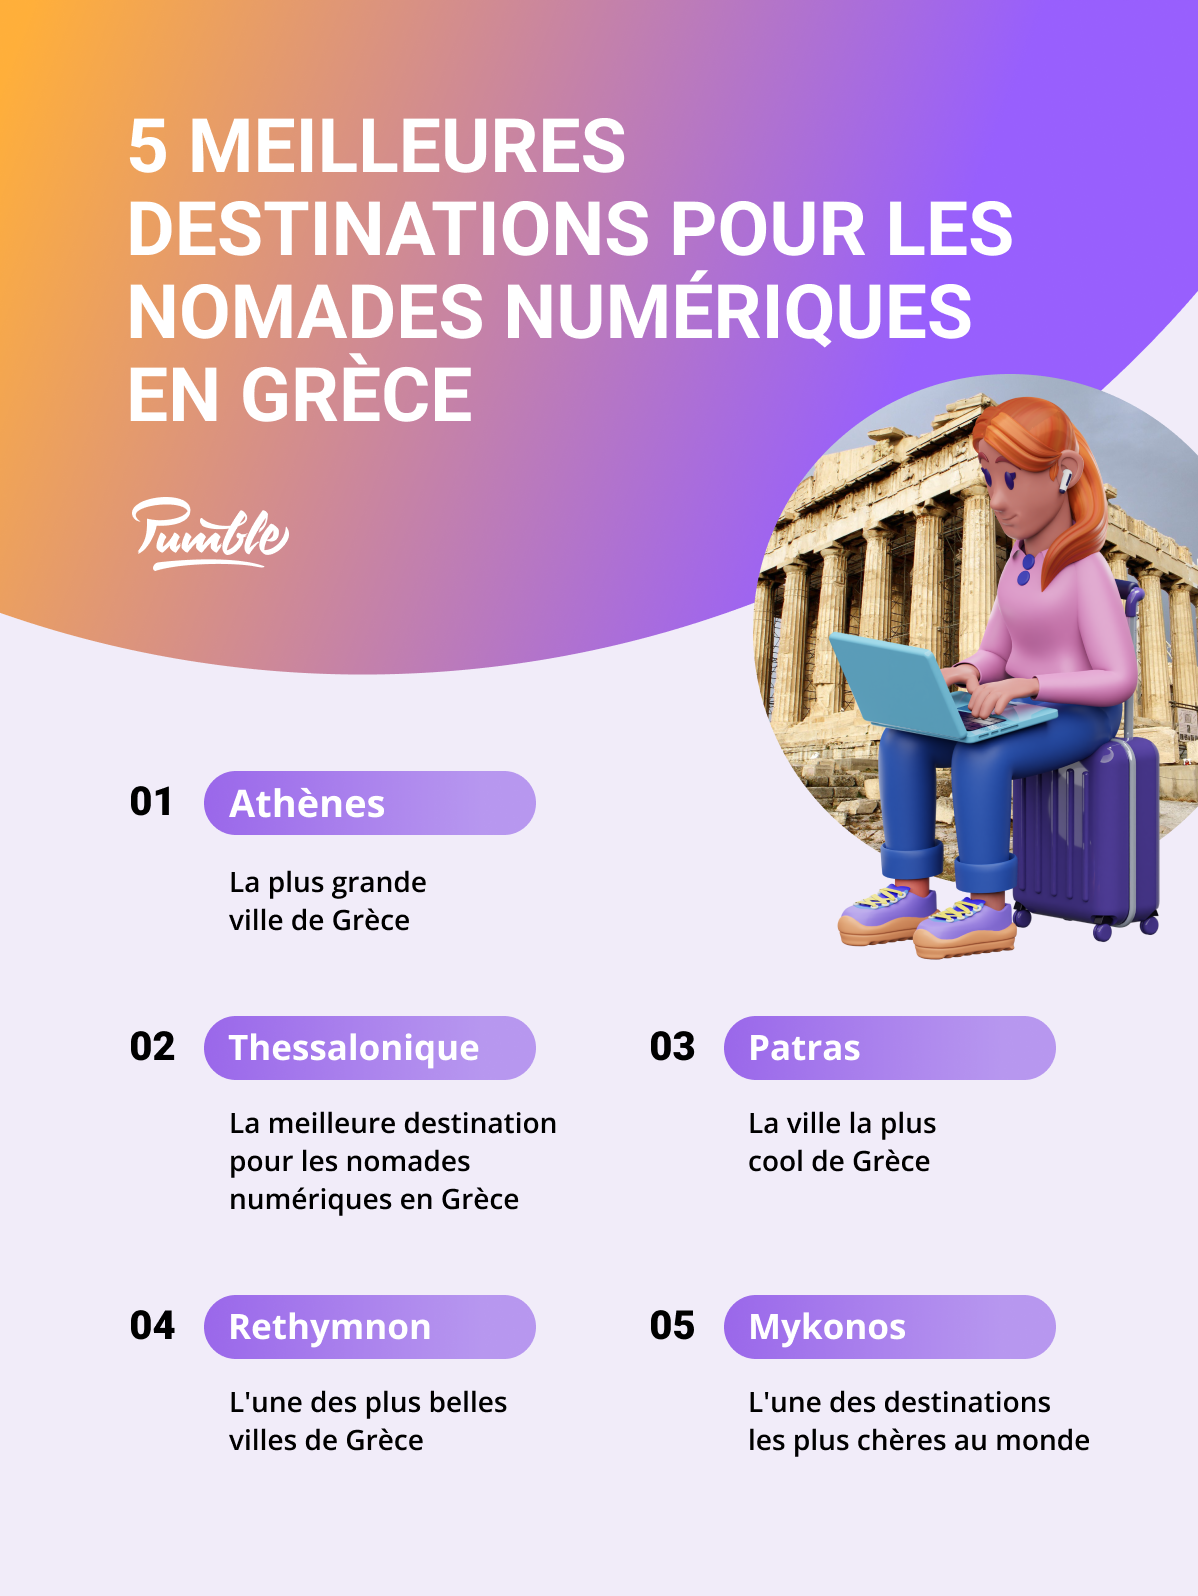 Les 5 meilleures destinations pour les nomades numériques en Grèce